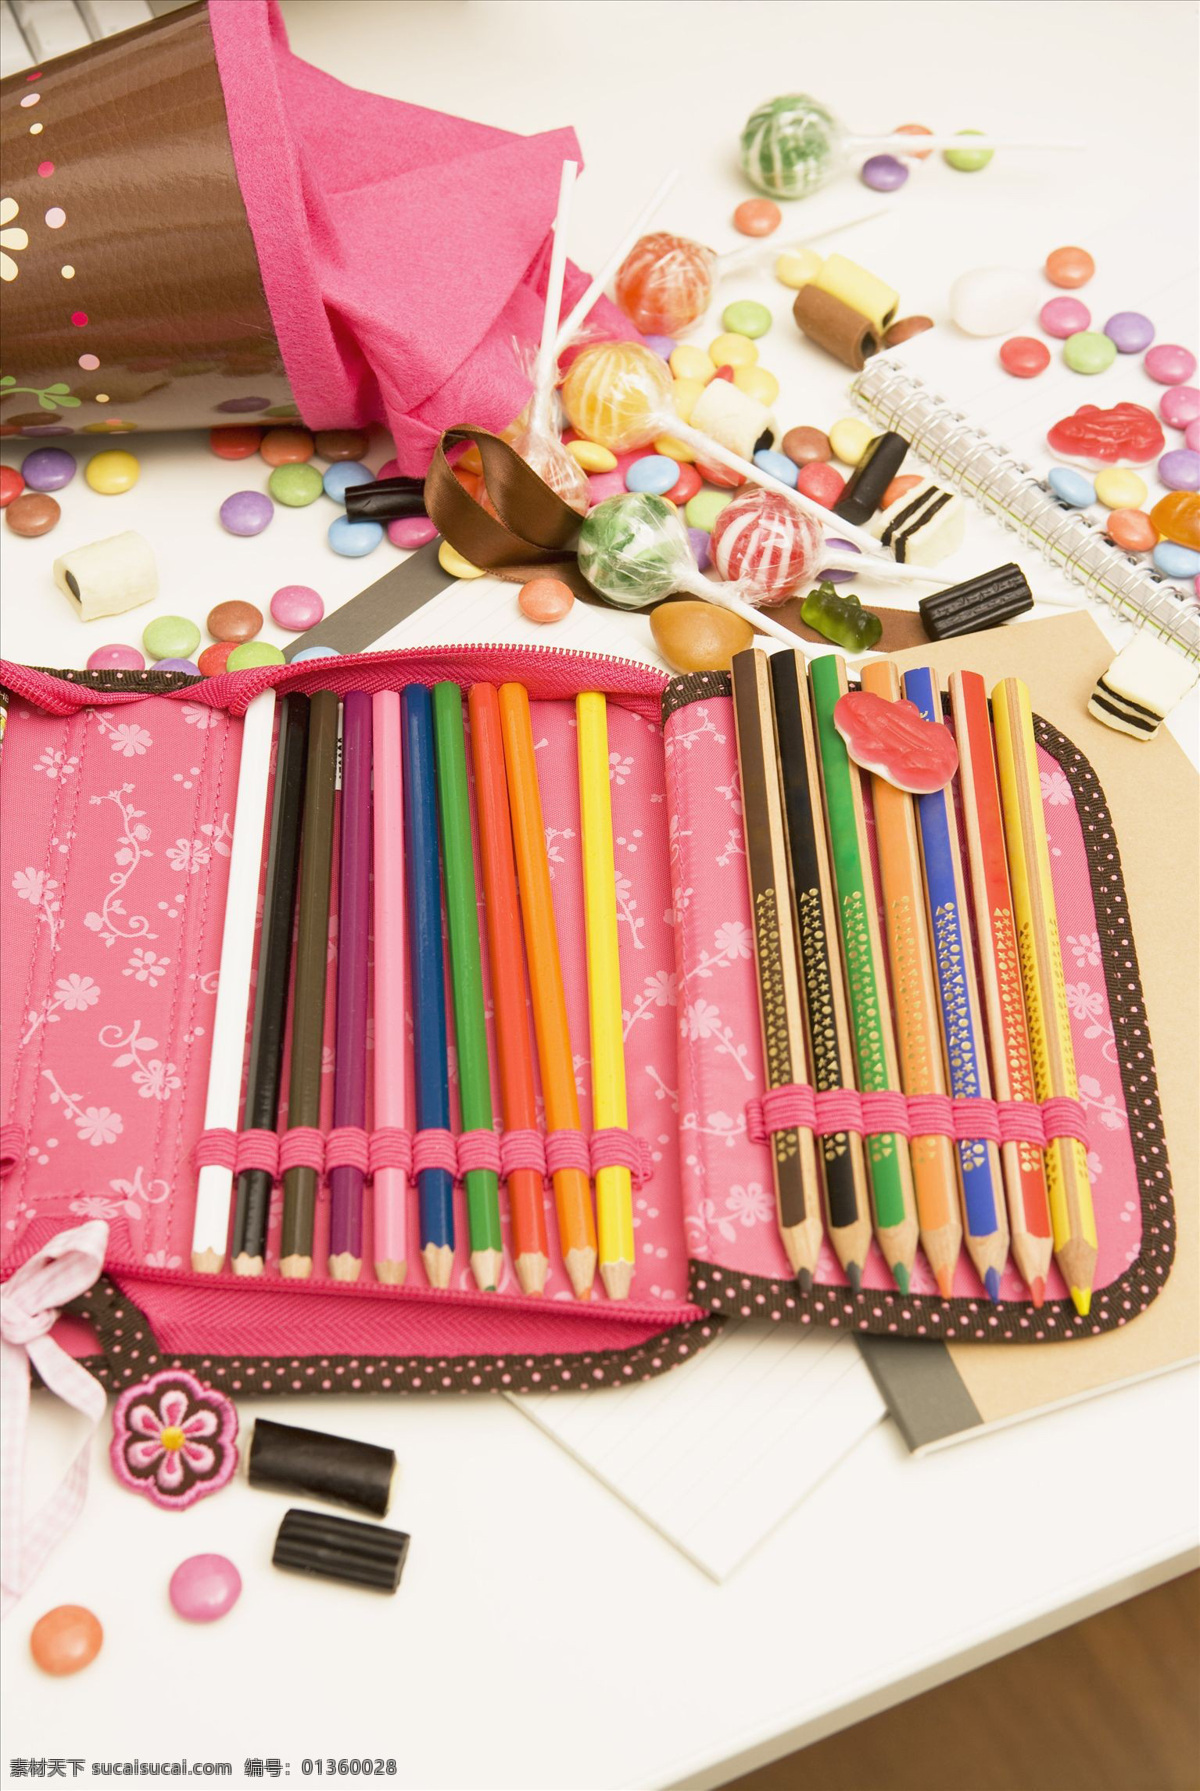 棒棒糖 笔记本 彩笔 彩色 多彩 粉红色 粉色 画笔 蜡笔 棒糖 多种多样 各种各样 铅笔 食物 糖果 甜食 甜味 条理 文具盒 许多 学习用品 学校教育 溢出 颜料 美术绘画 文化艺术 矢量图 其他矢量图